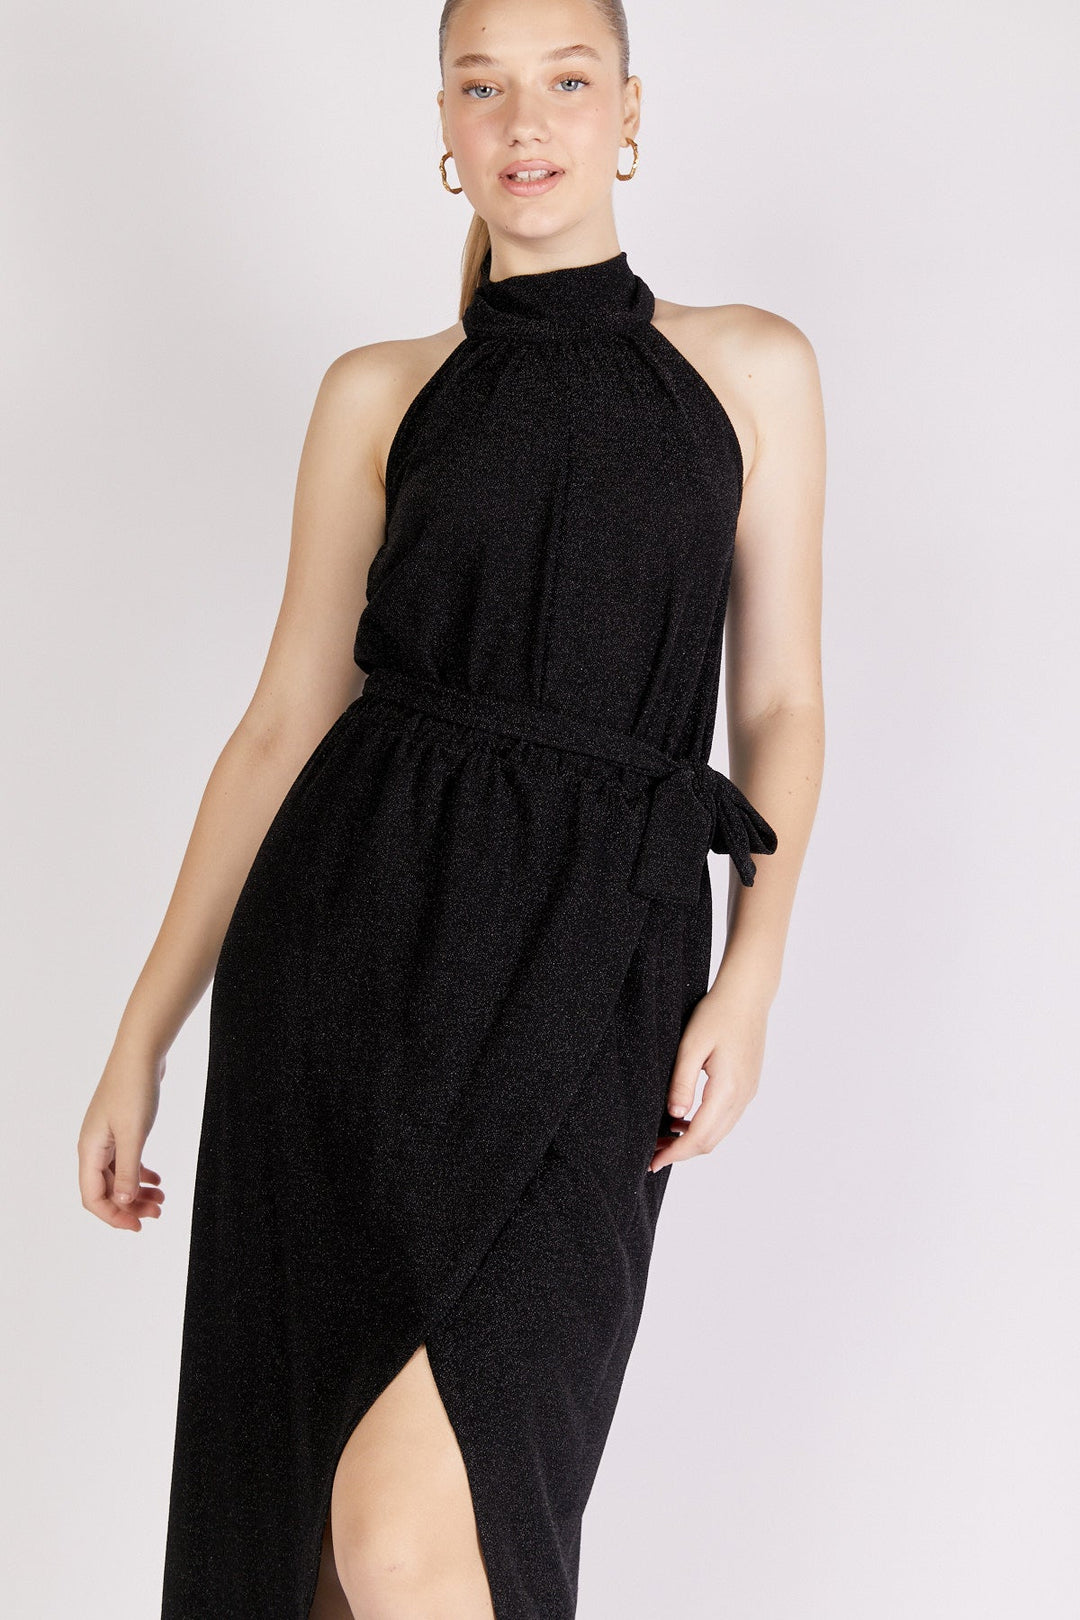 שמלת ערב מקסי גרייס בצבע שחור לורקס - Neta Efrati